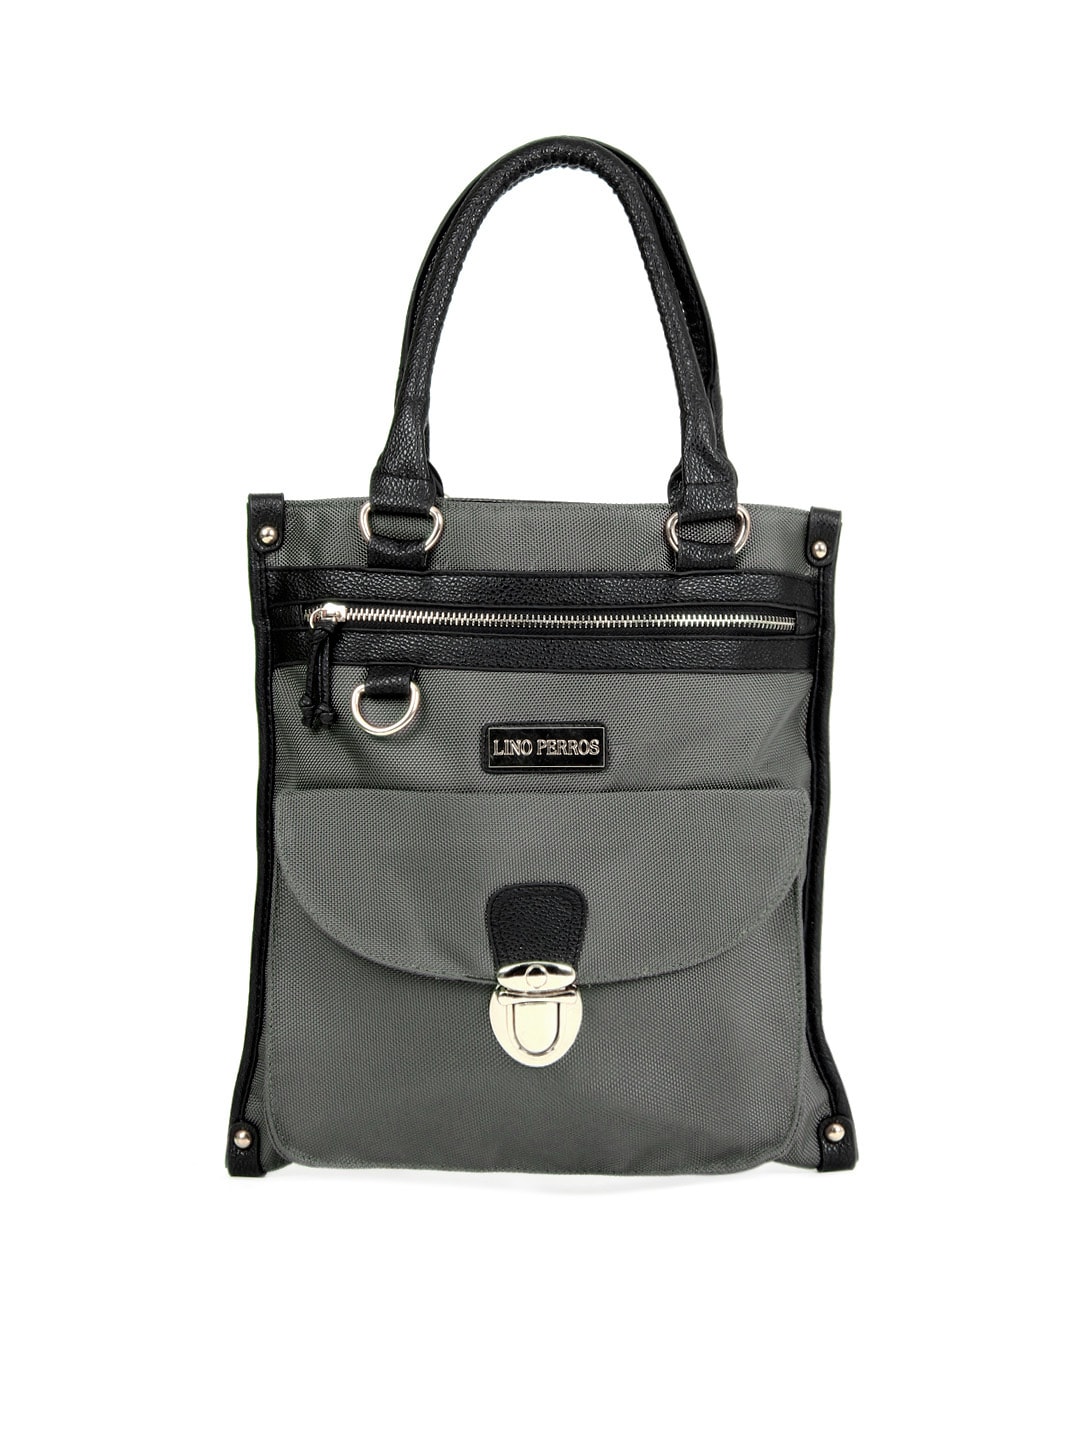 Lino Perros Women Grey and Black Handbag